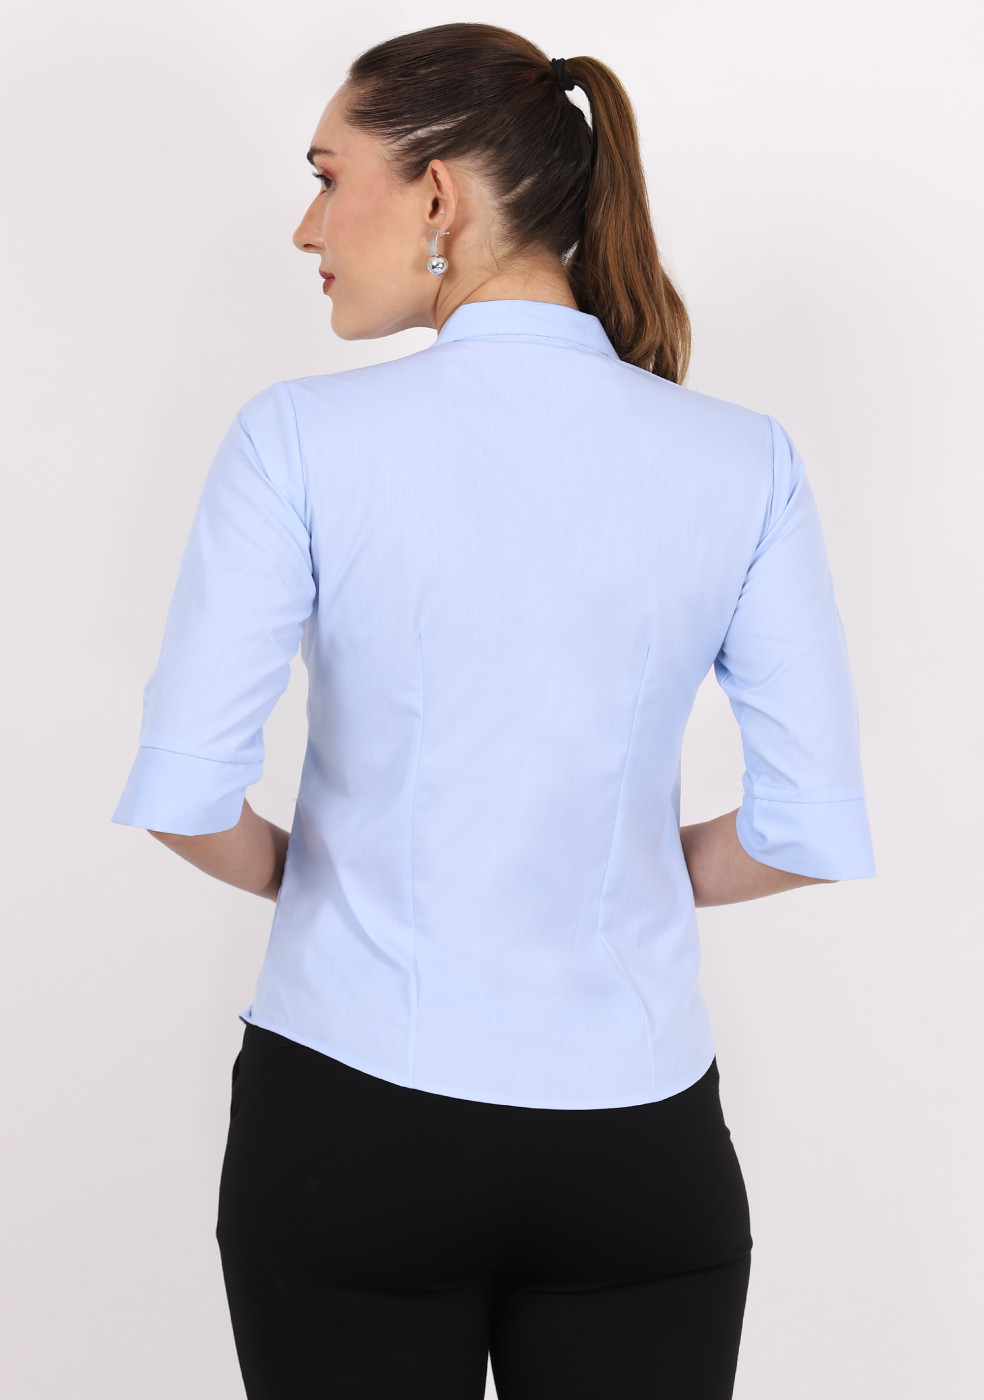 Zx3 Plain Shirt For Women